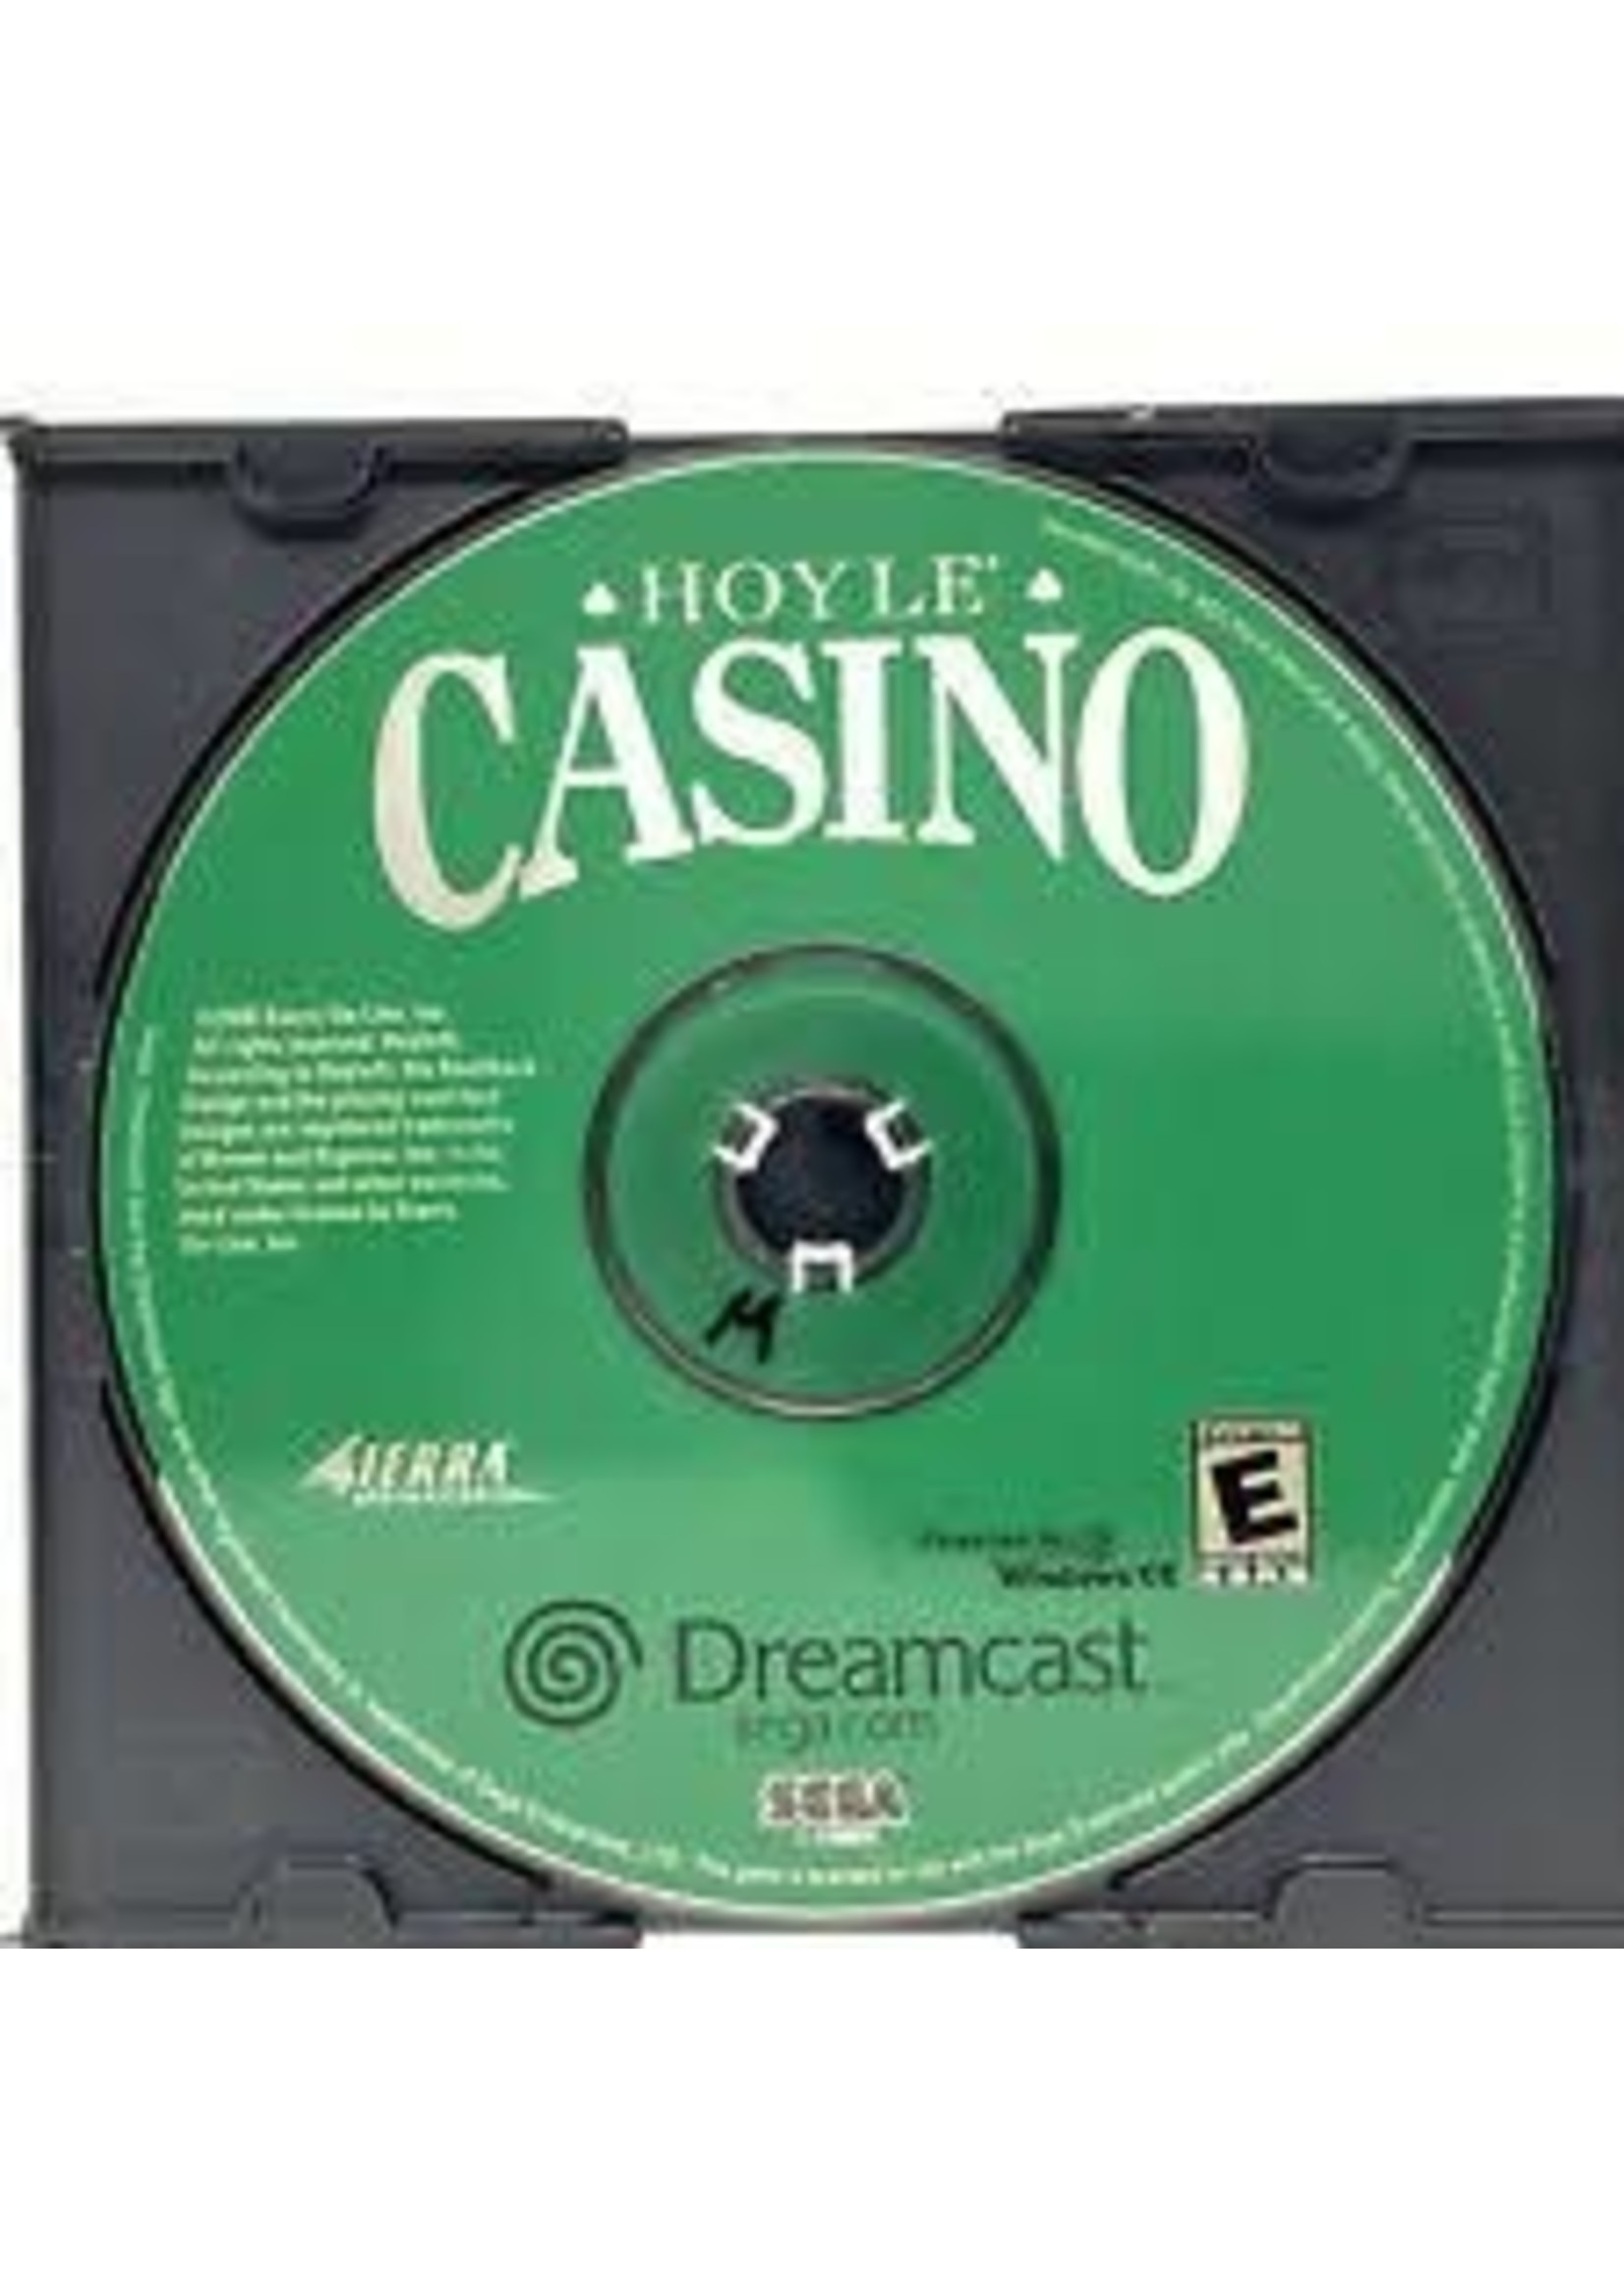 Sega Dreamcast Hoyle Casino - Disc Only